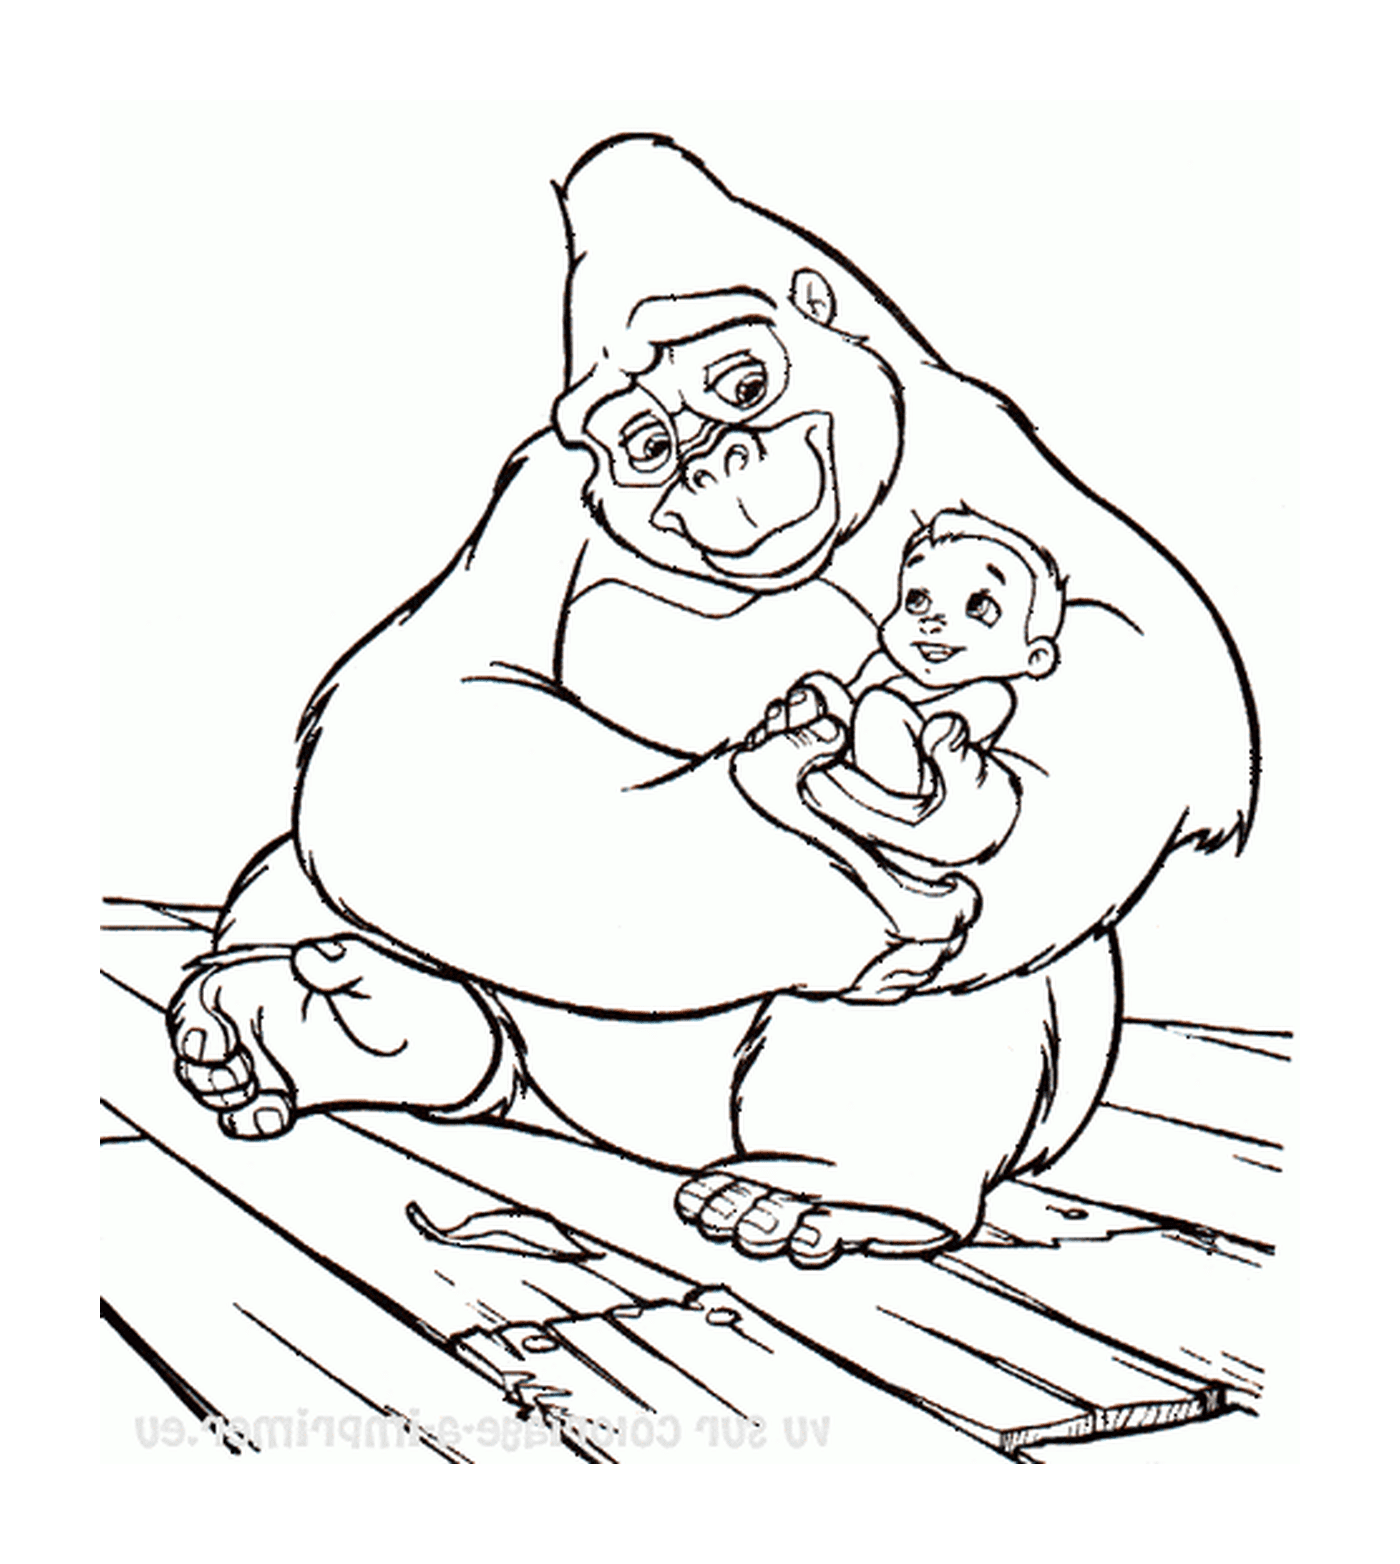  成年大猩猩怀着婴儿在她的怀里 